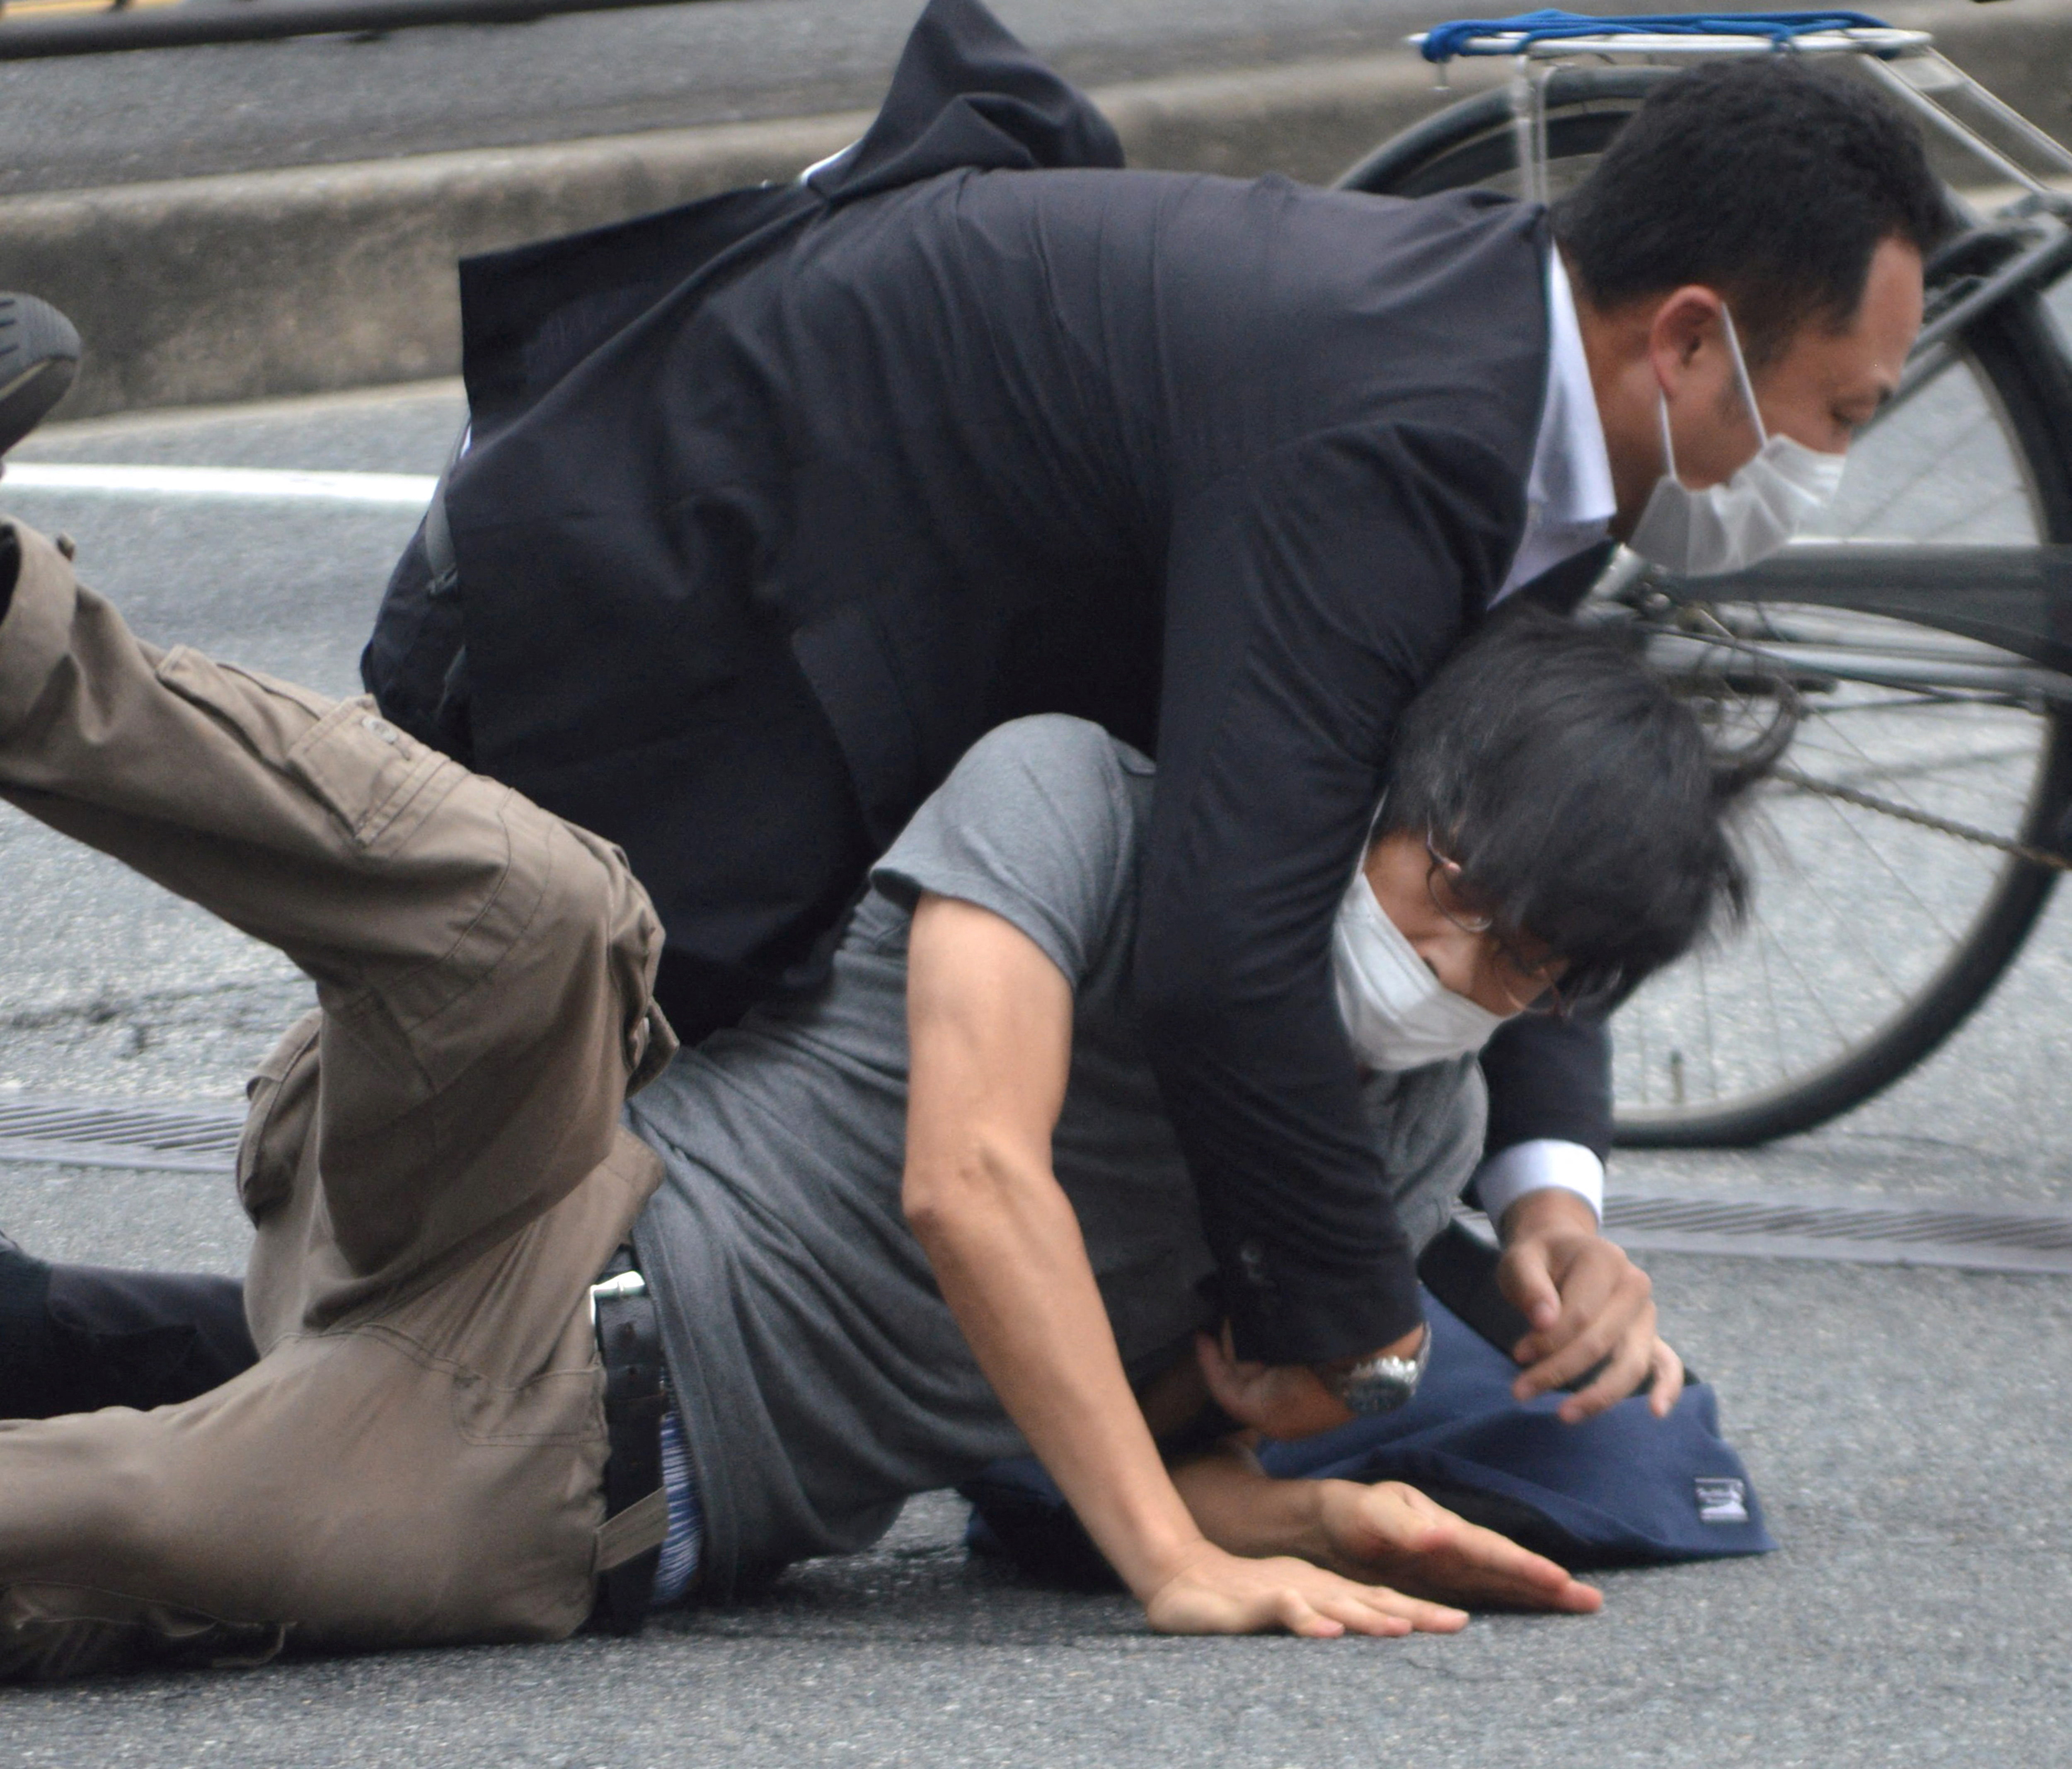 Σίνζο Άμπε: Τι γνωρίζουμε μέχρι τώρα για την επίθεση στον πρώην πρωθυπουργό της Ιαπωνίας (βίντεο, φωτογραφίες)-1